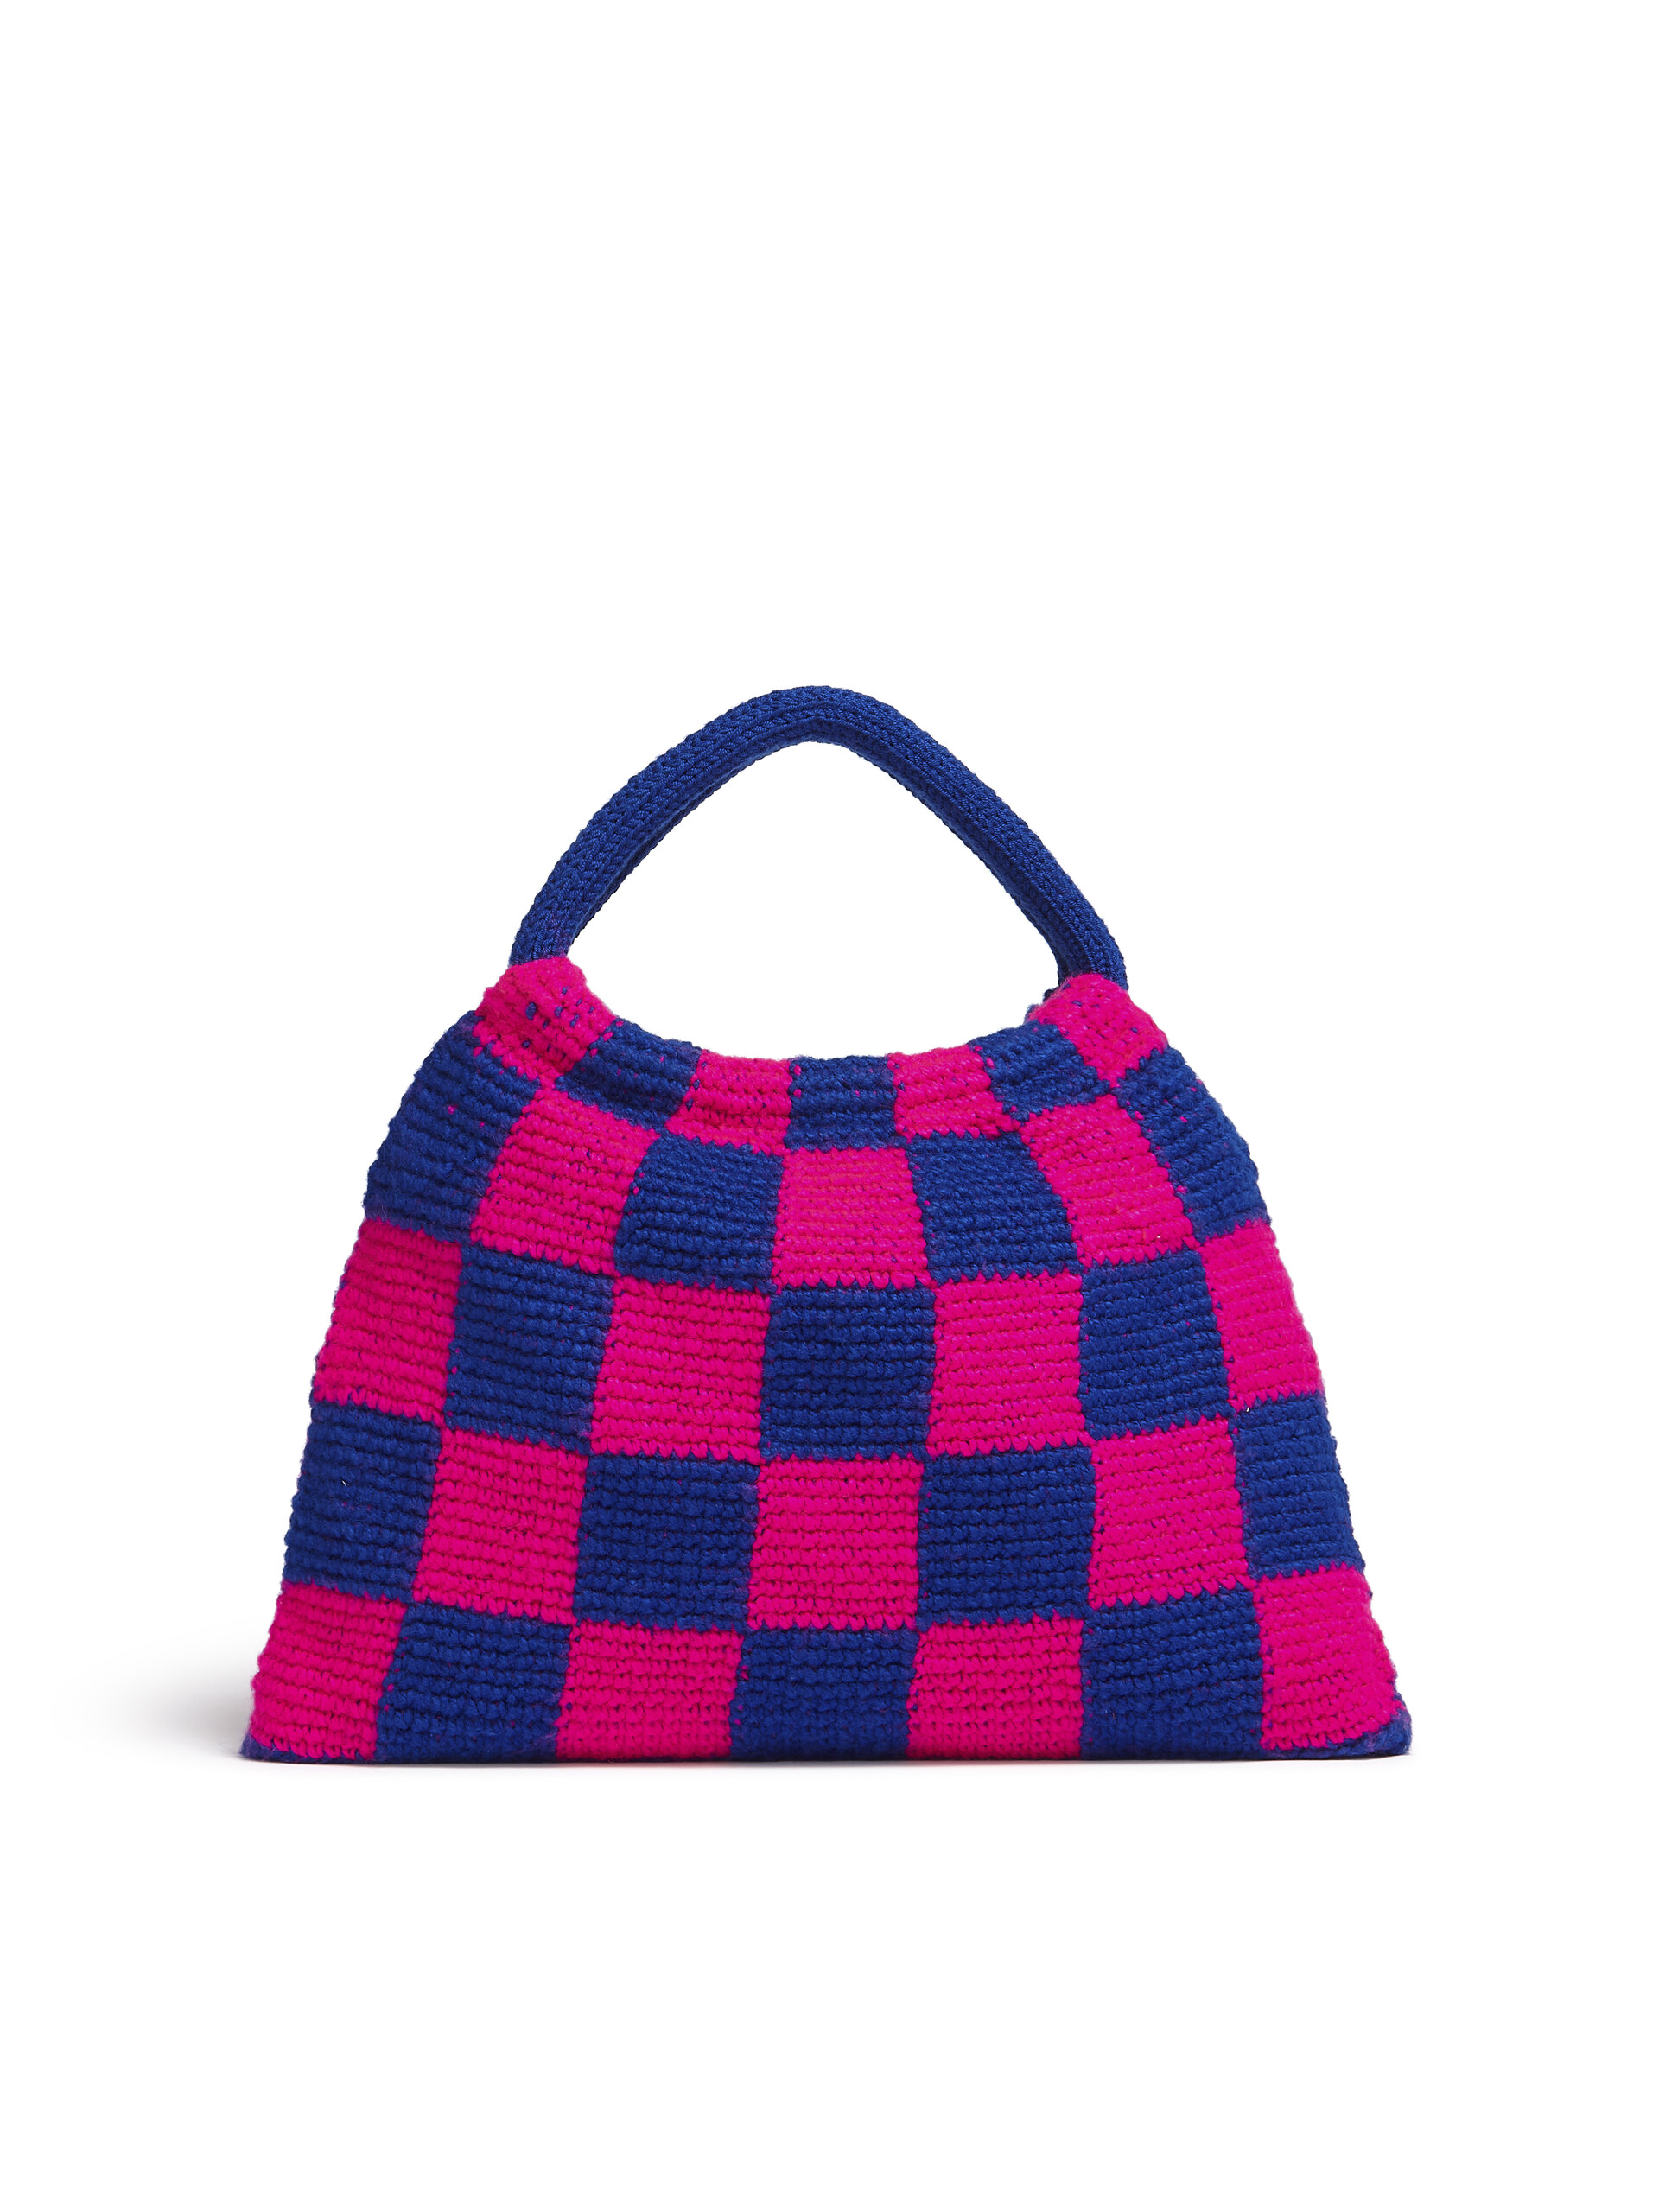 Sac MARNI MARKET GRANNY rose et bleu réalisé au crochet - Sacs cabas - Image 3